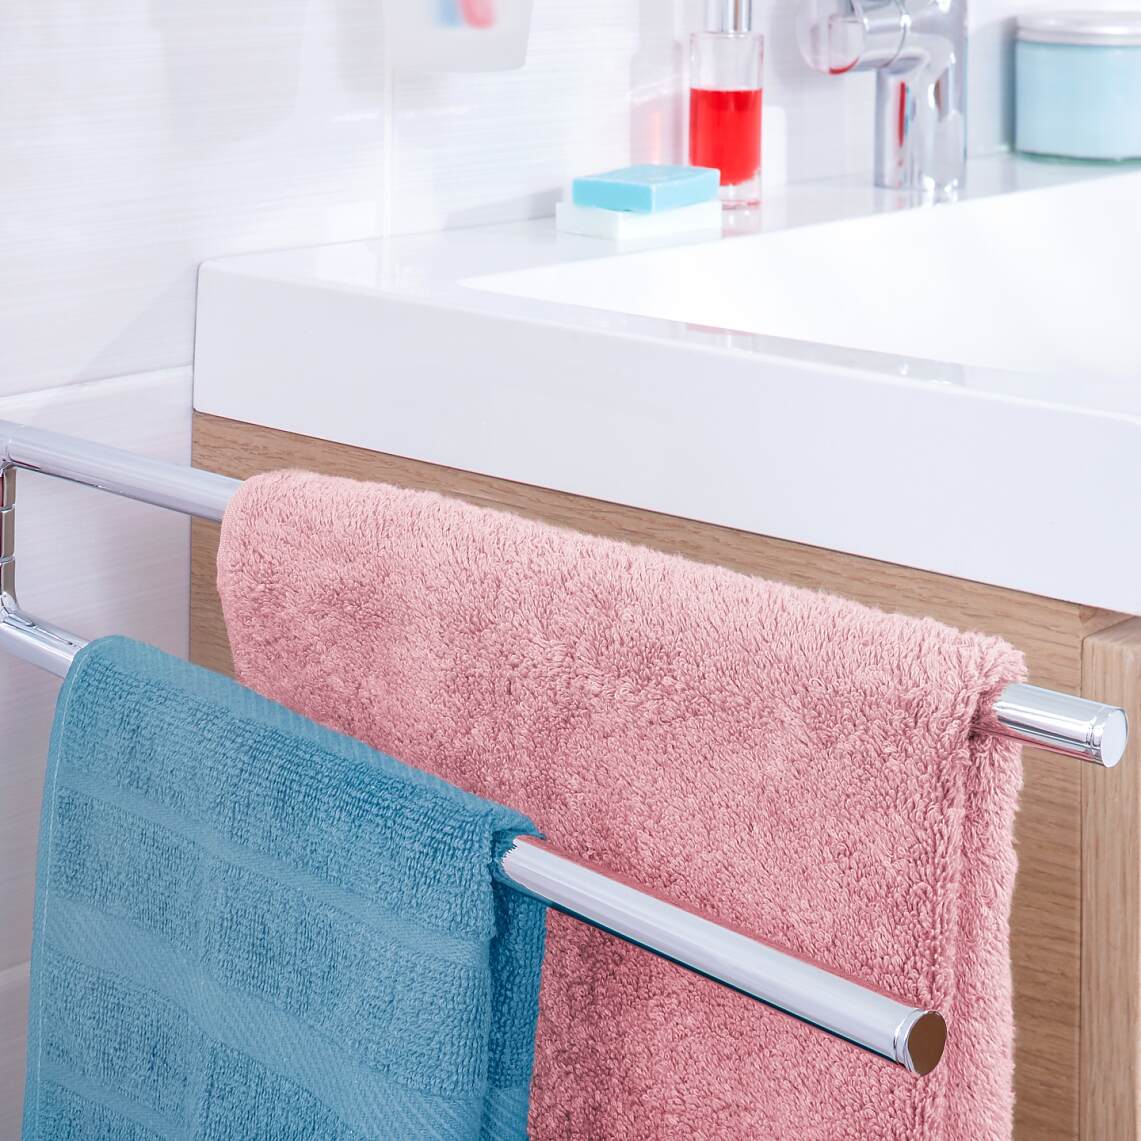 accesorios baño toallas sin taladro – Compra accesorios baño